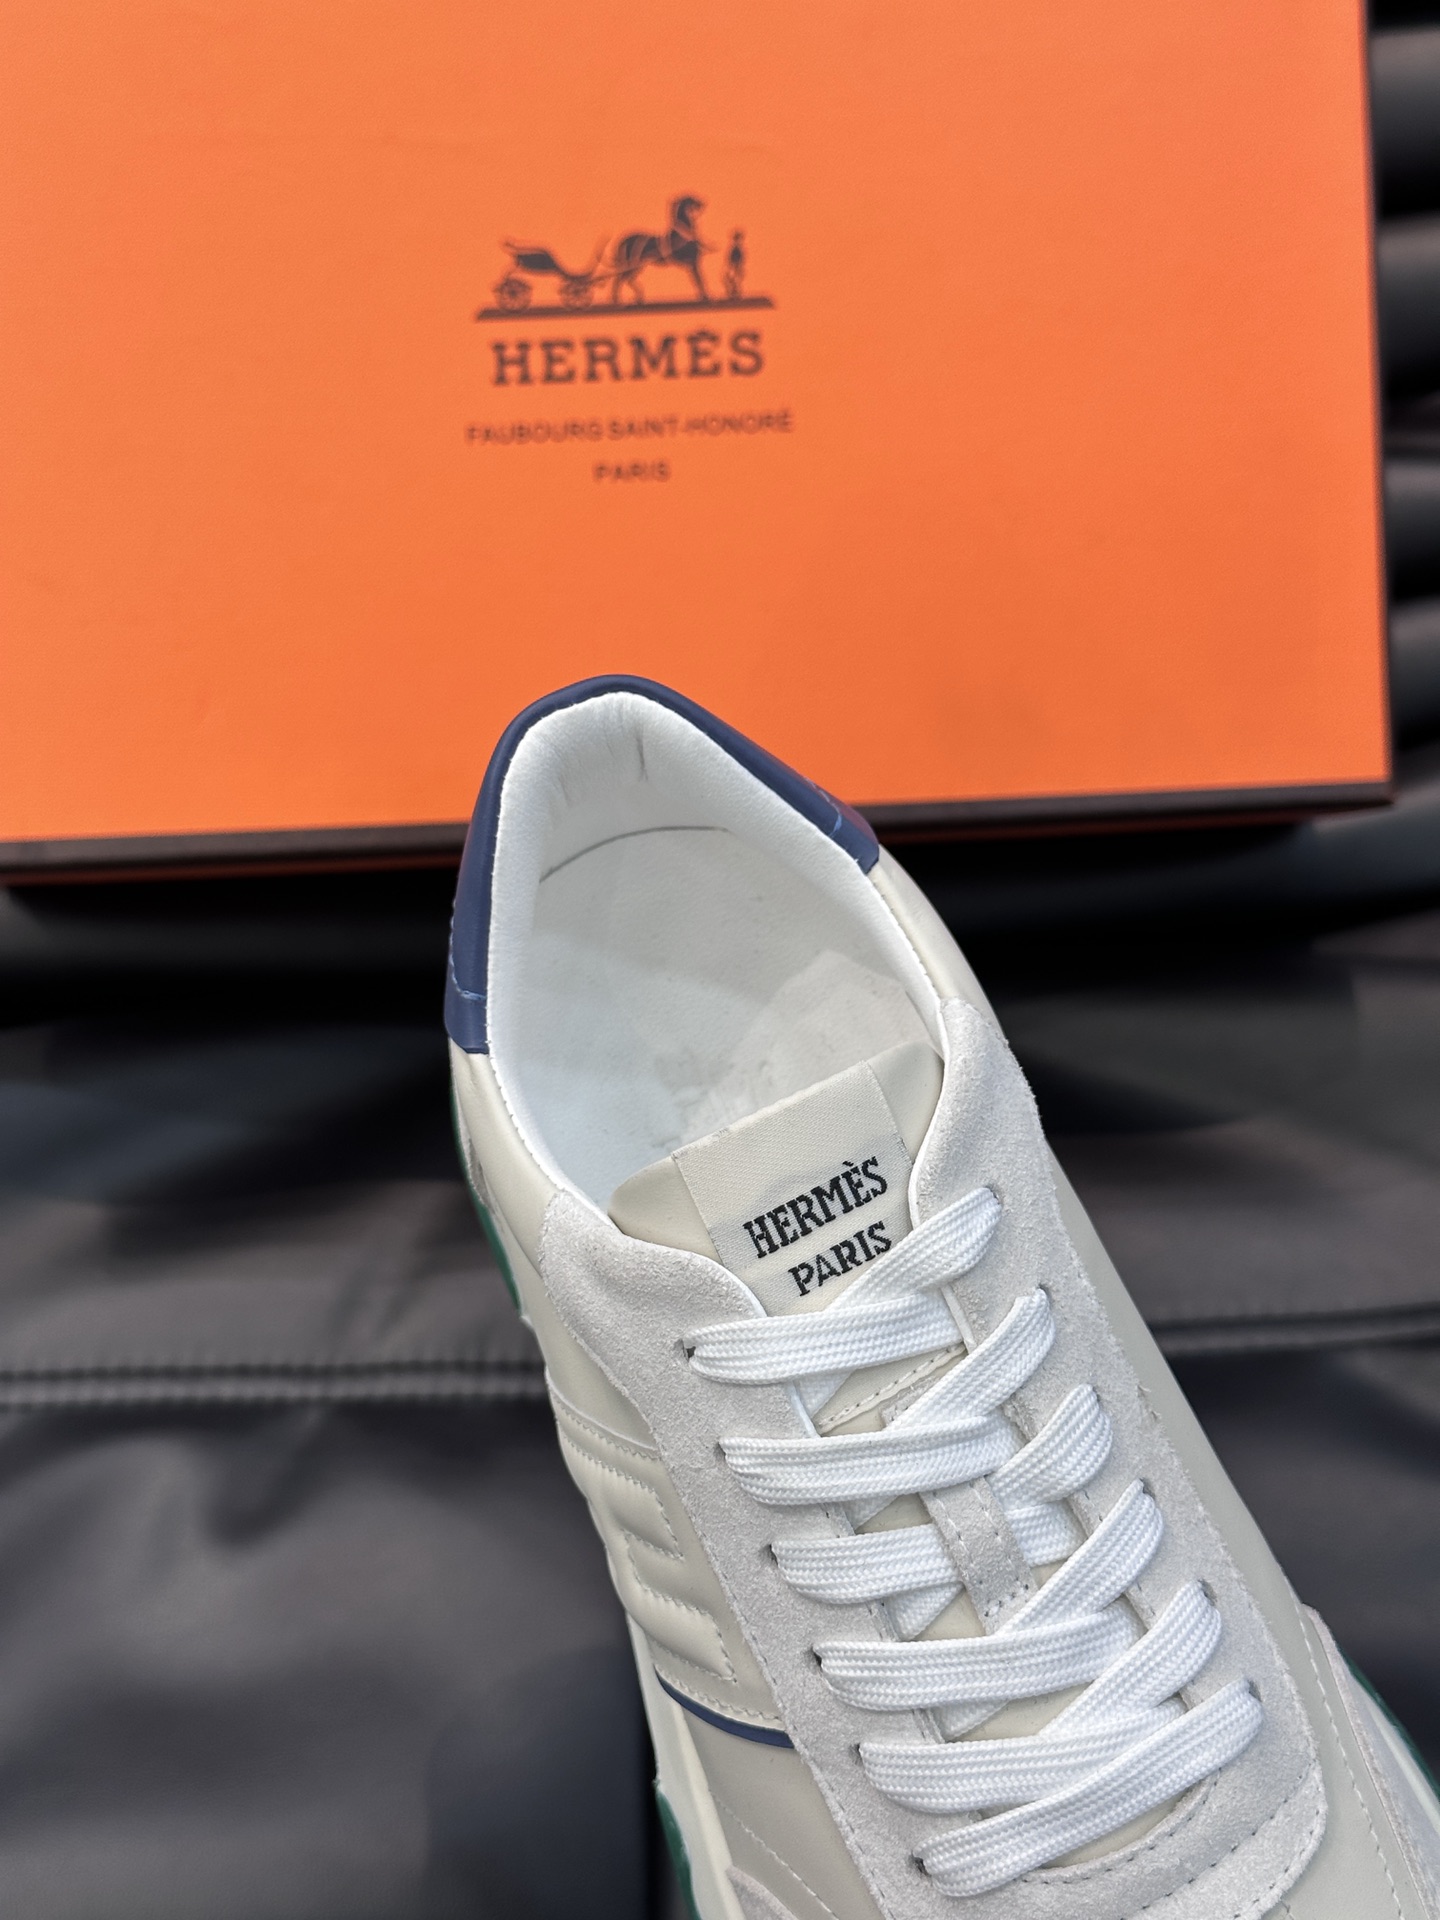 HermesH新品系列C-Addict运动鞋打造现代优雅造型原单级男士运动休闲鞋进口原厂小牛皮材质质感十